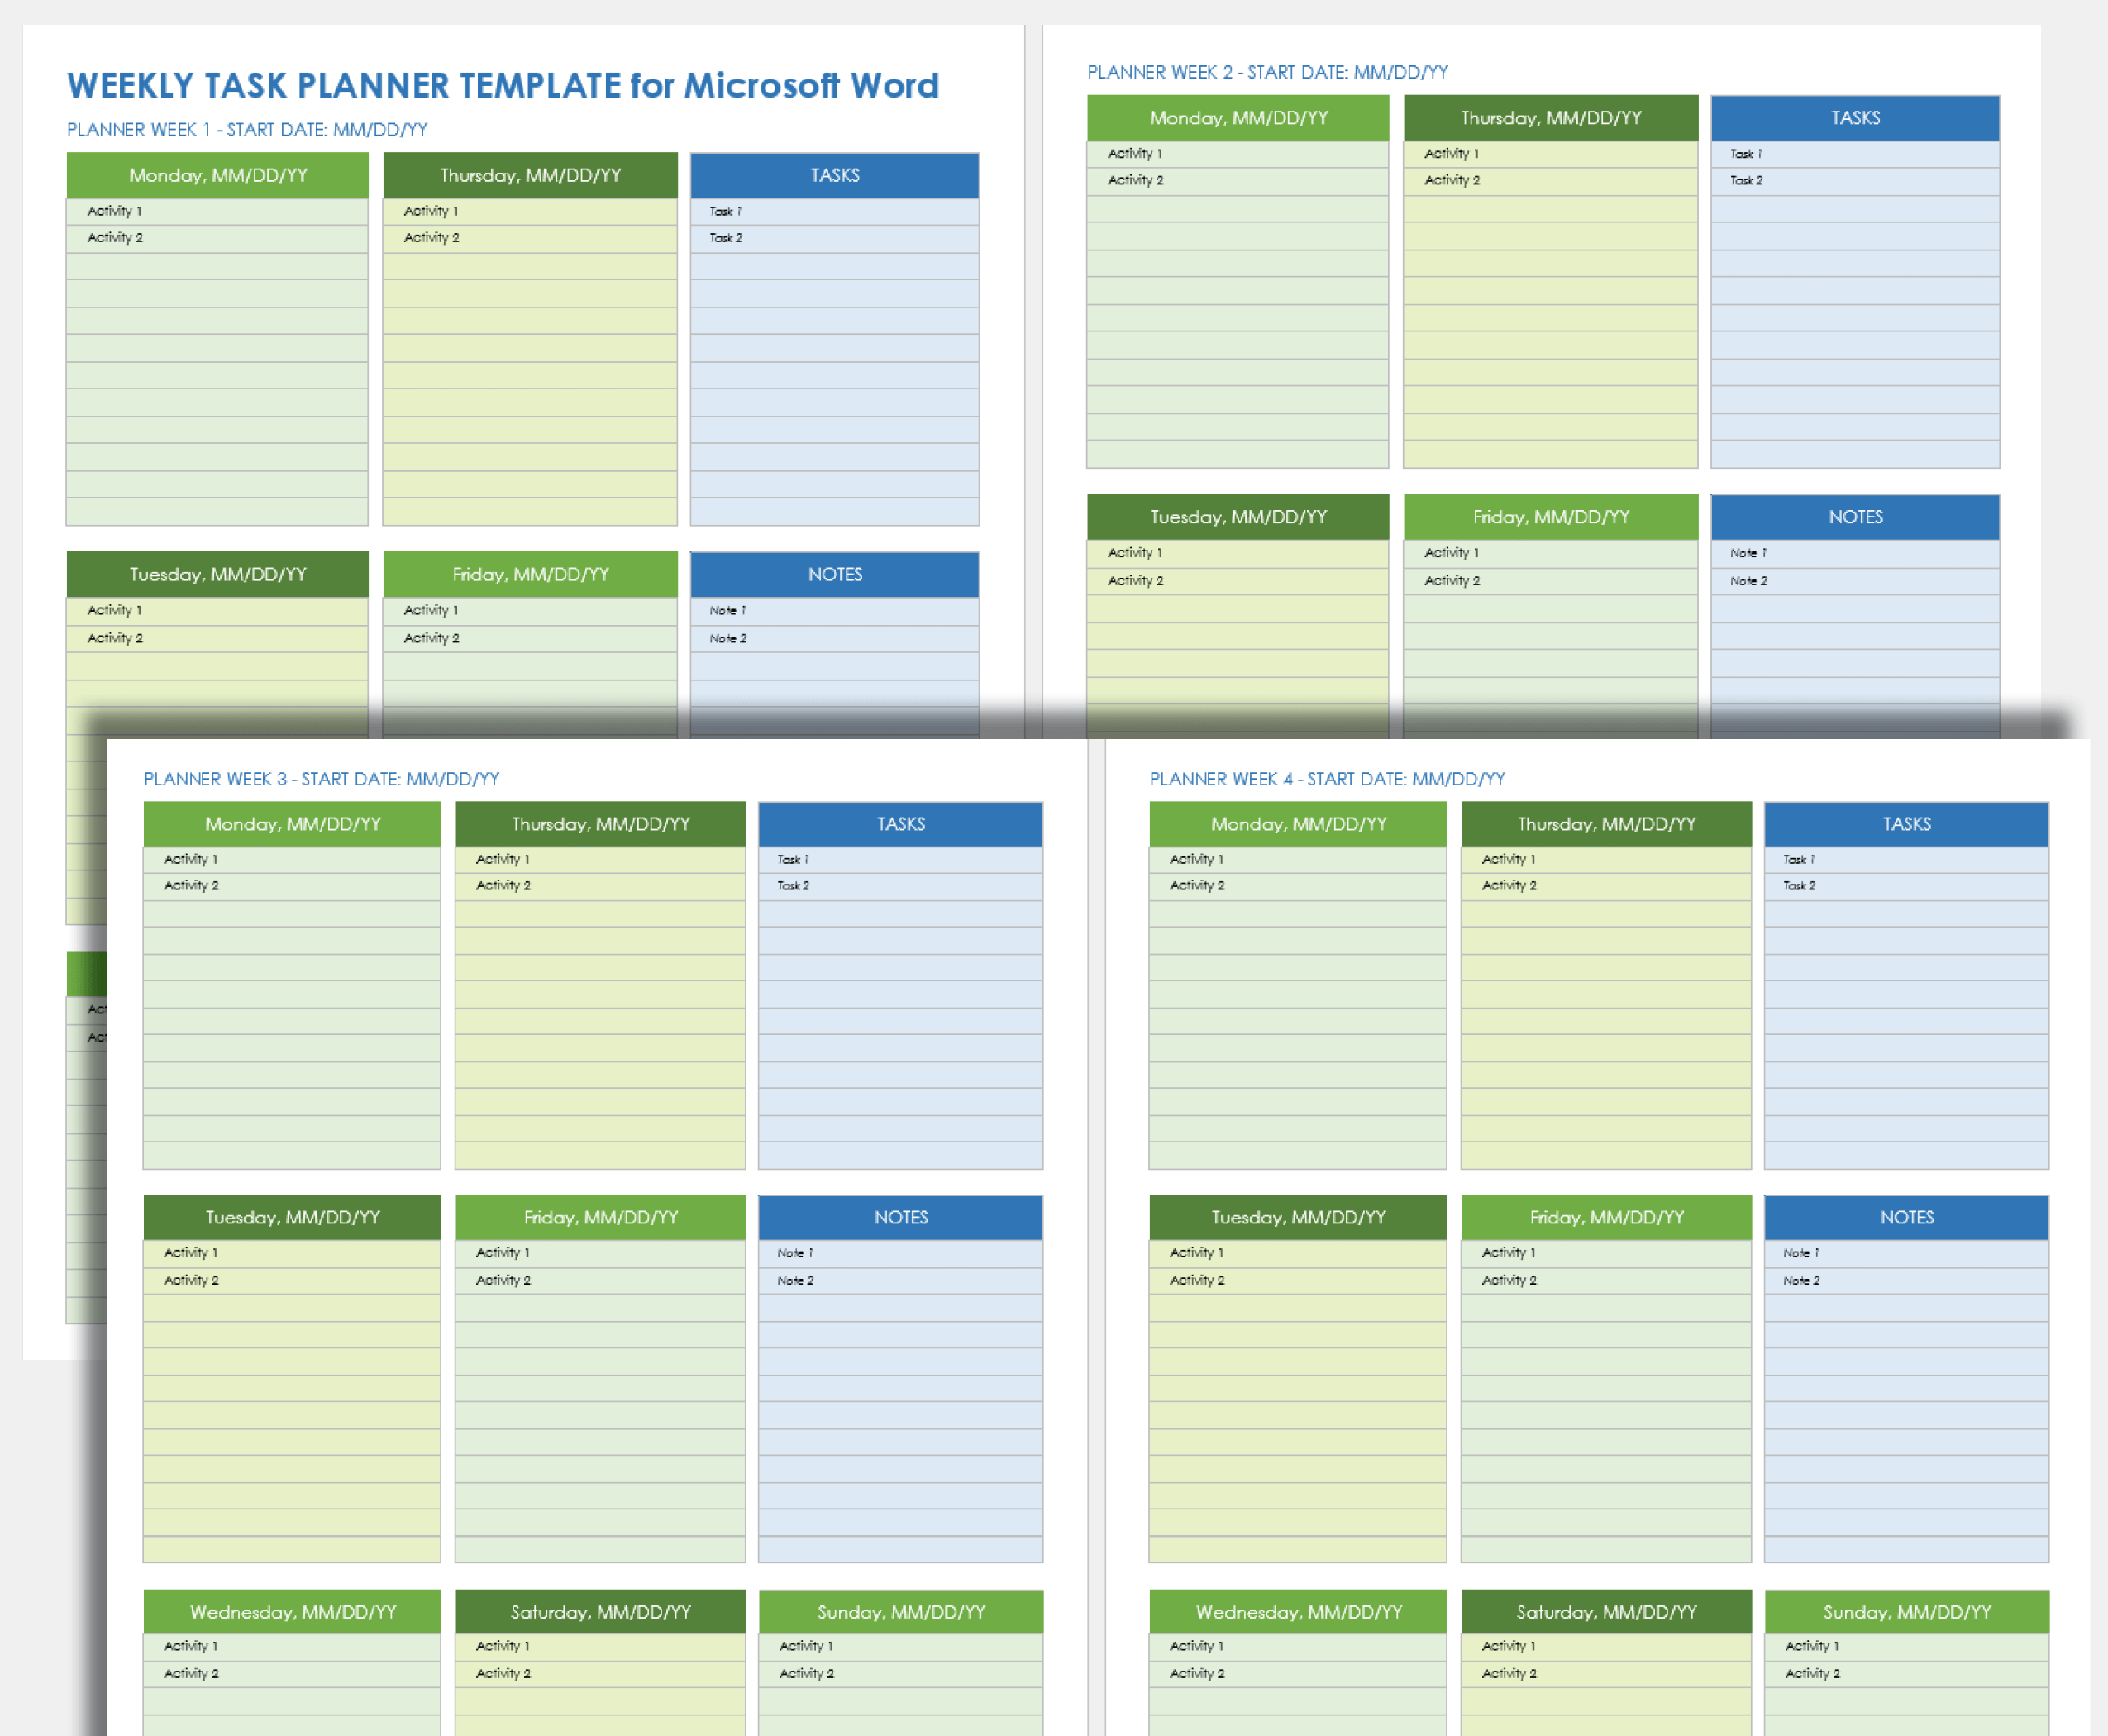 Weekly Task Planner Template Microsoft Word